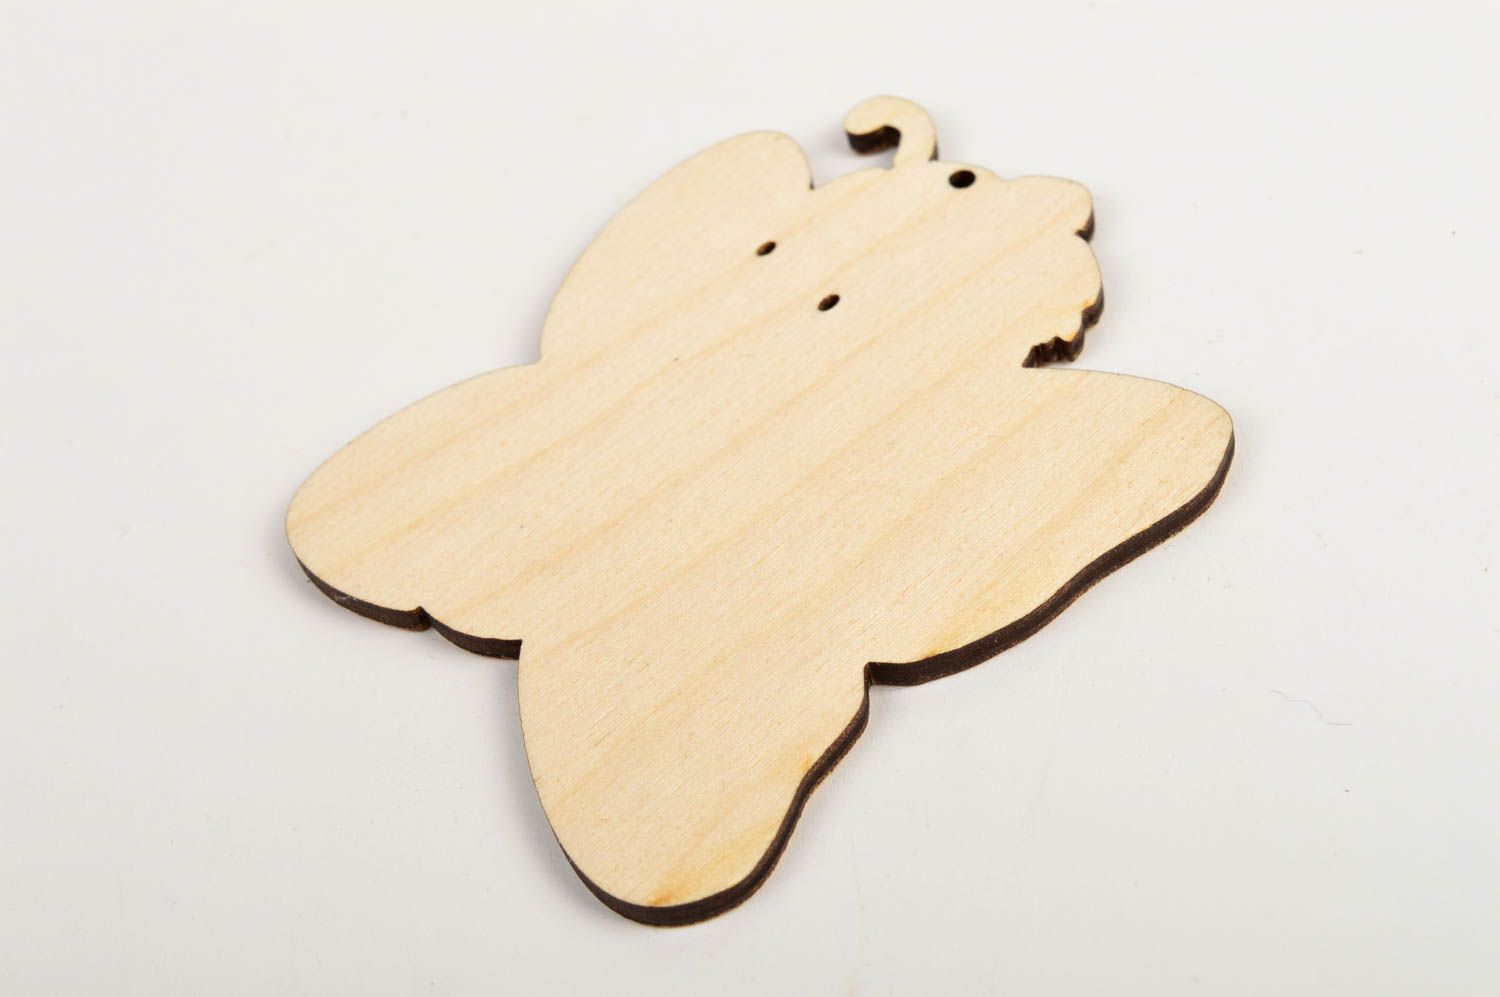 Cute handmade wooden blank toy gift ideas for kids art materials art supplies photo 5